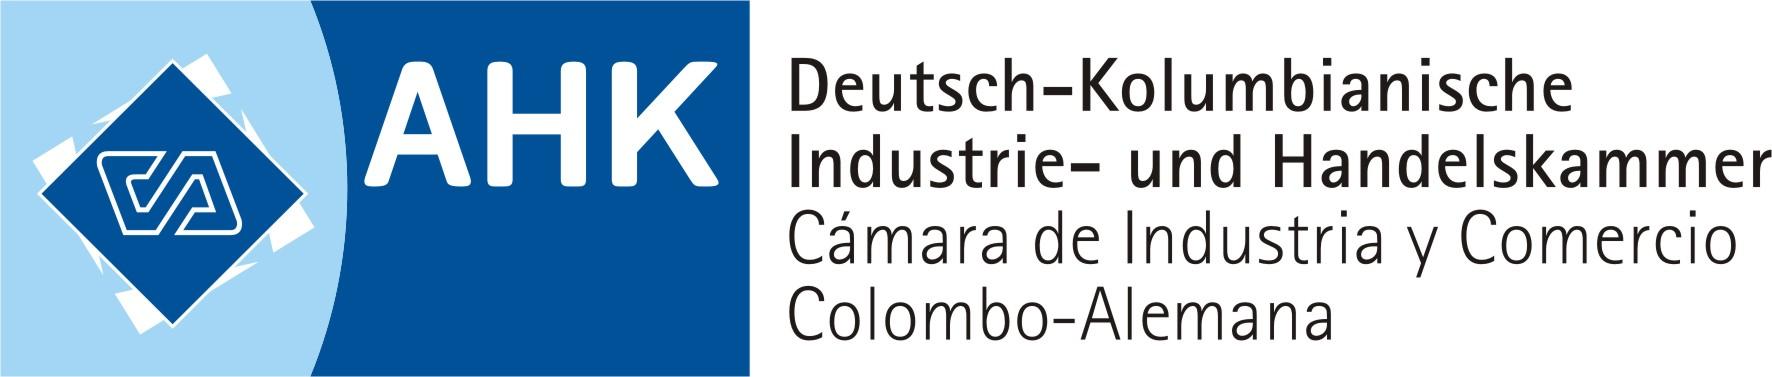 Die Deutsch-Kolumbianische Industrie- und Handelskammer|AHK